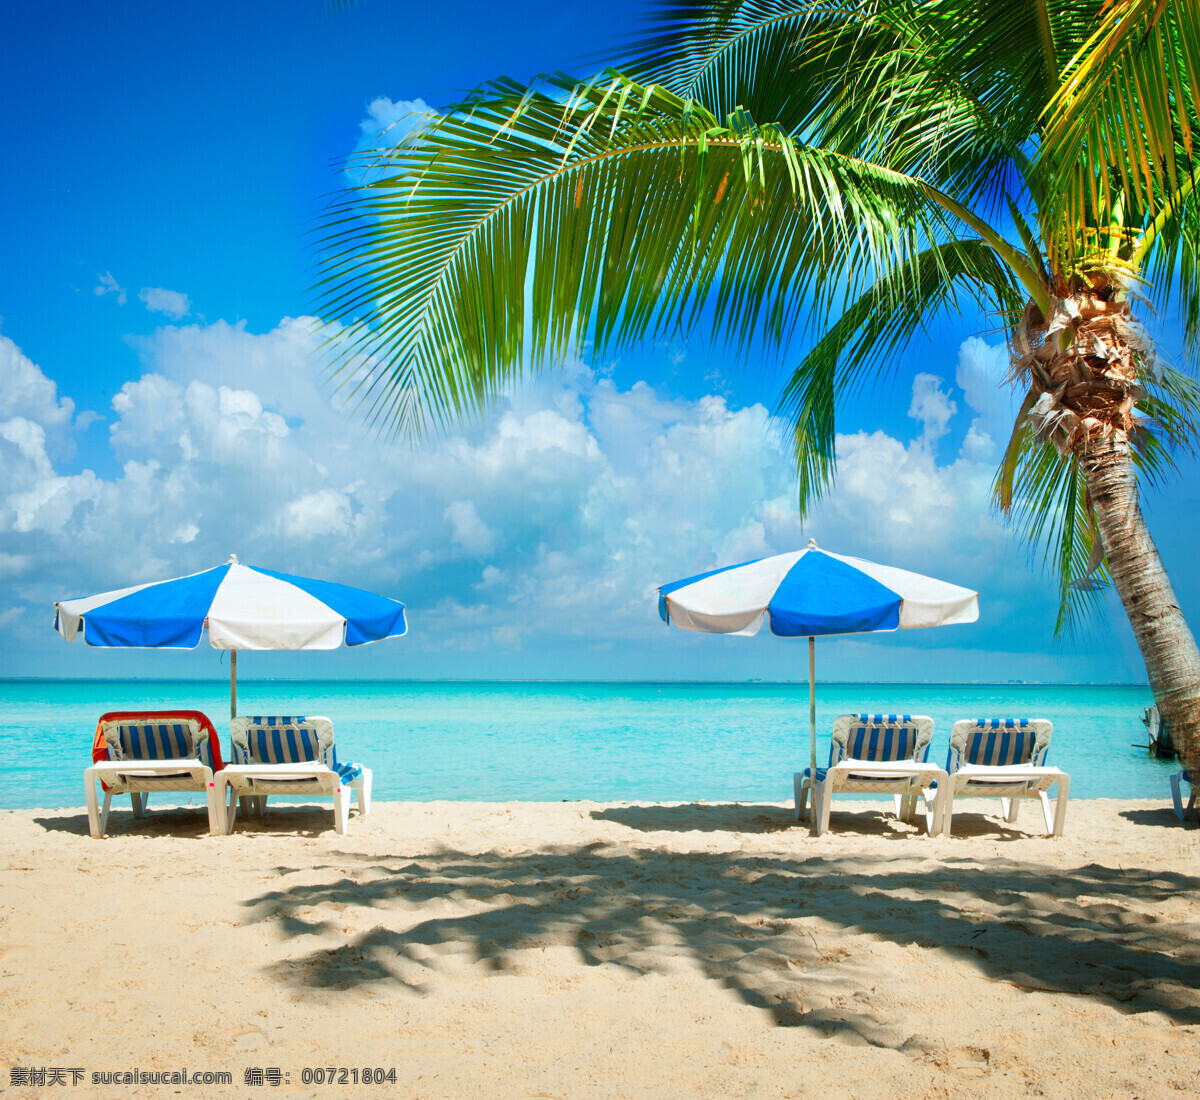 美丽 海滩 上 椅子 太阳伞 海滩风景 沙滩风景 美丽海岸风景 大海风景 海景 美丽风景 大海图片 风景图片